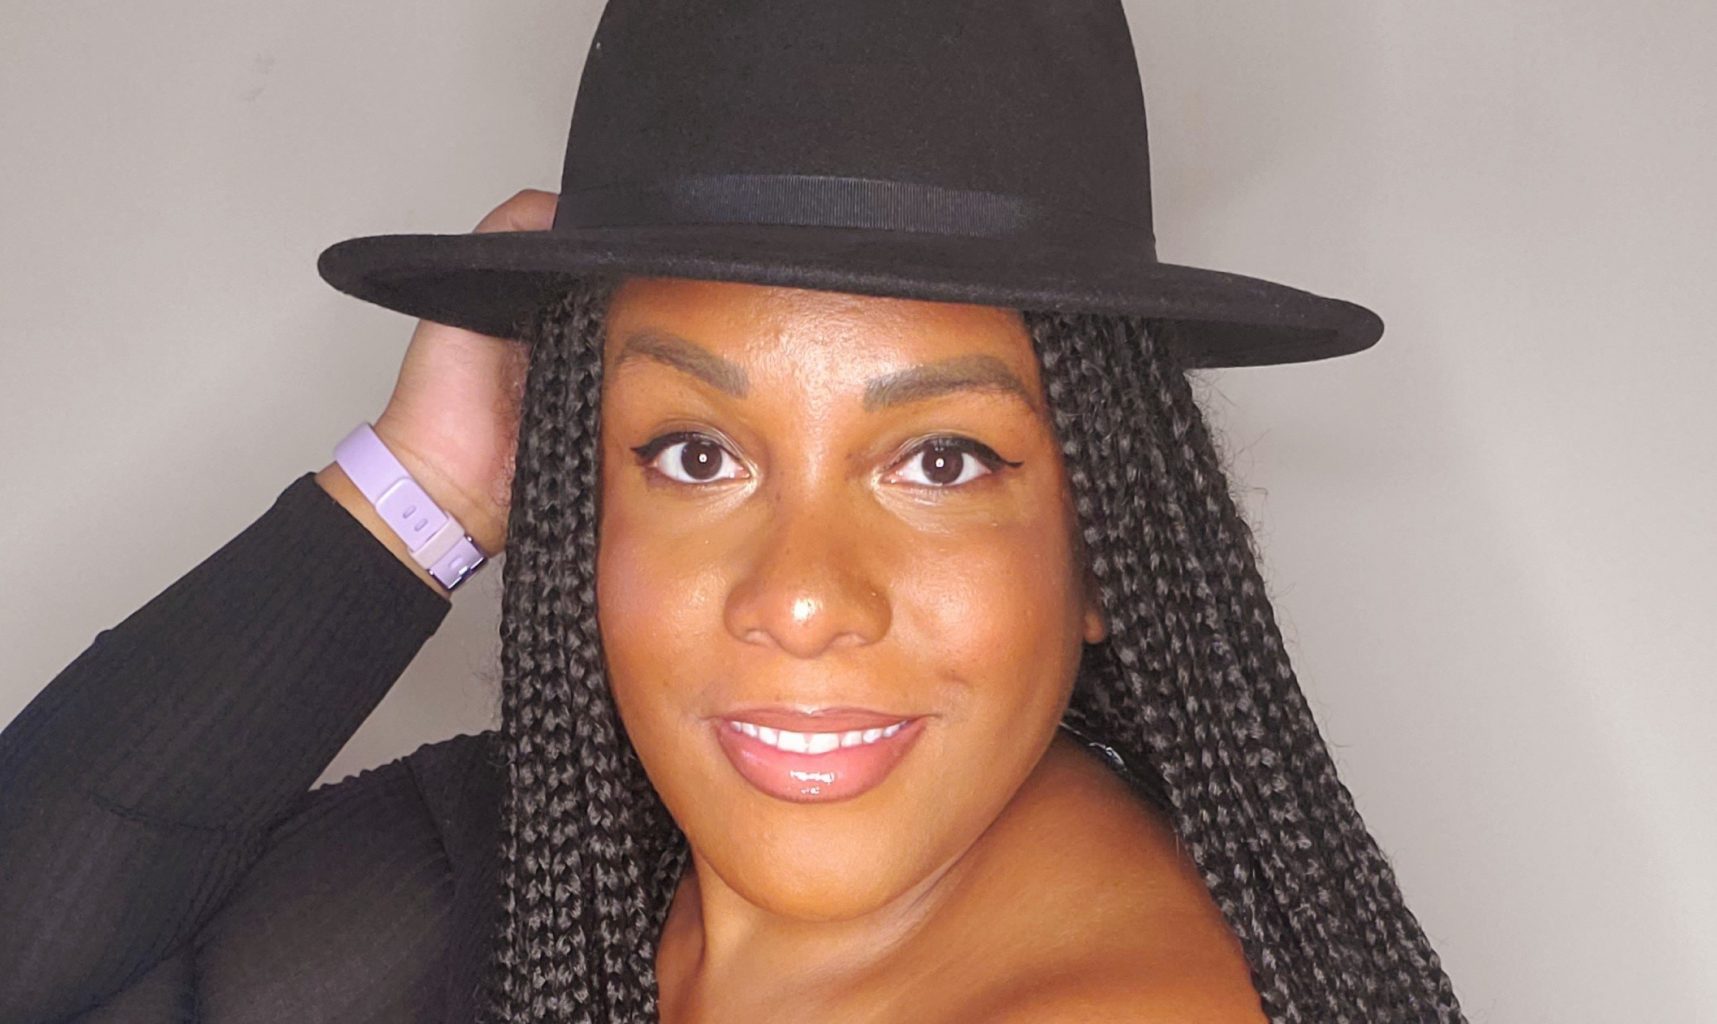 Intervenor Lisa Marie for Black History Month